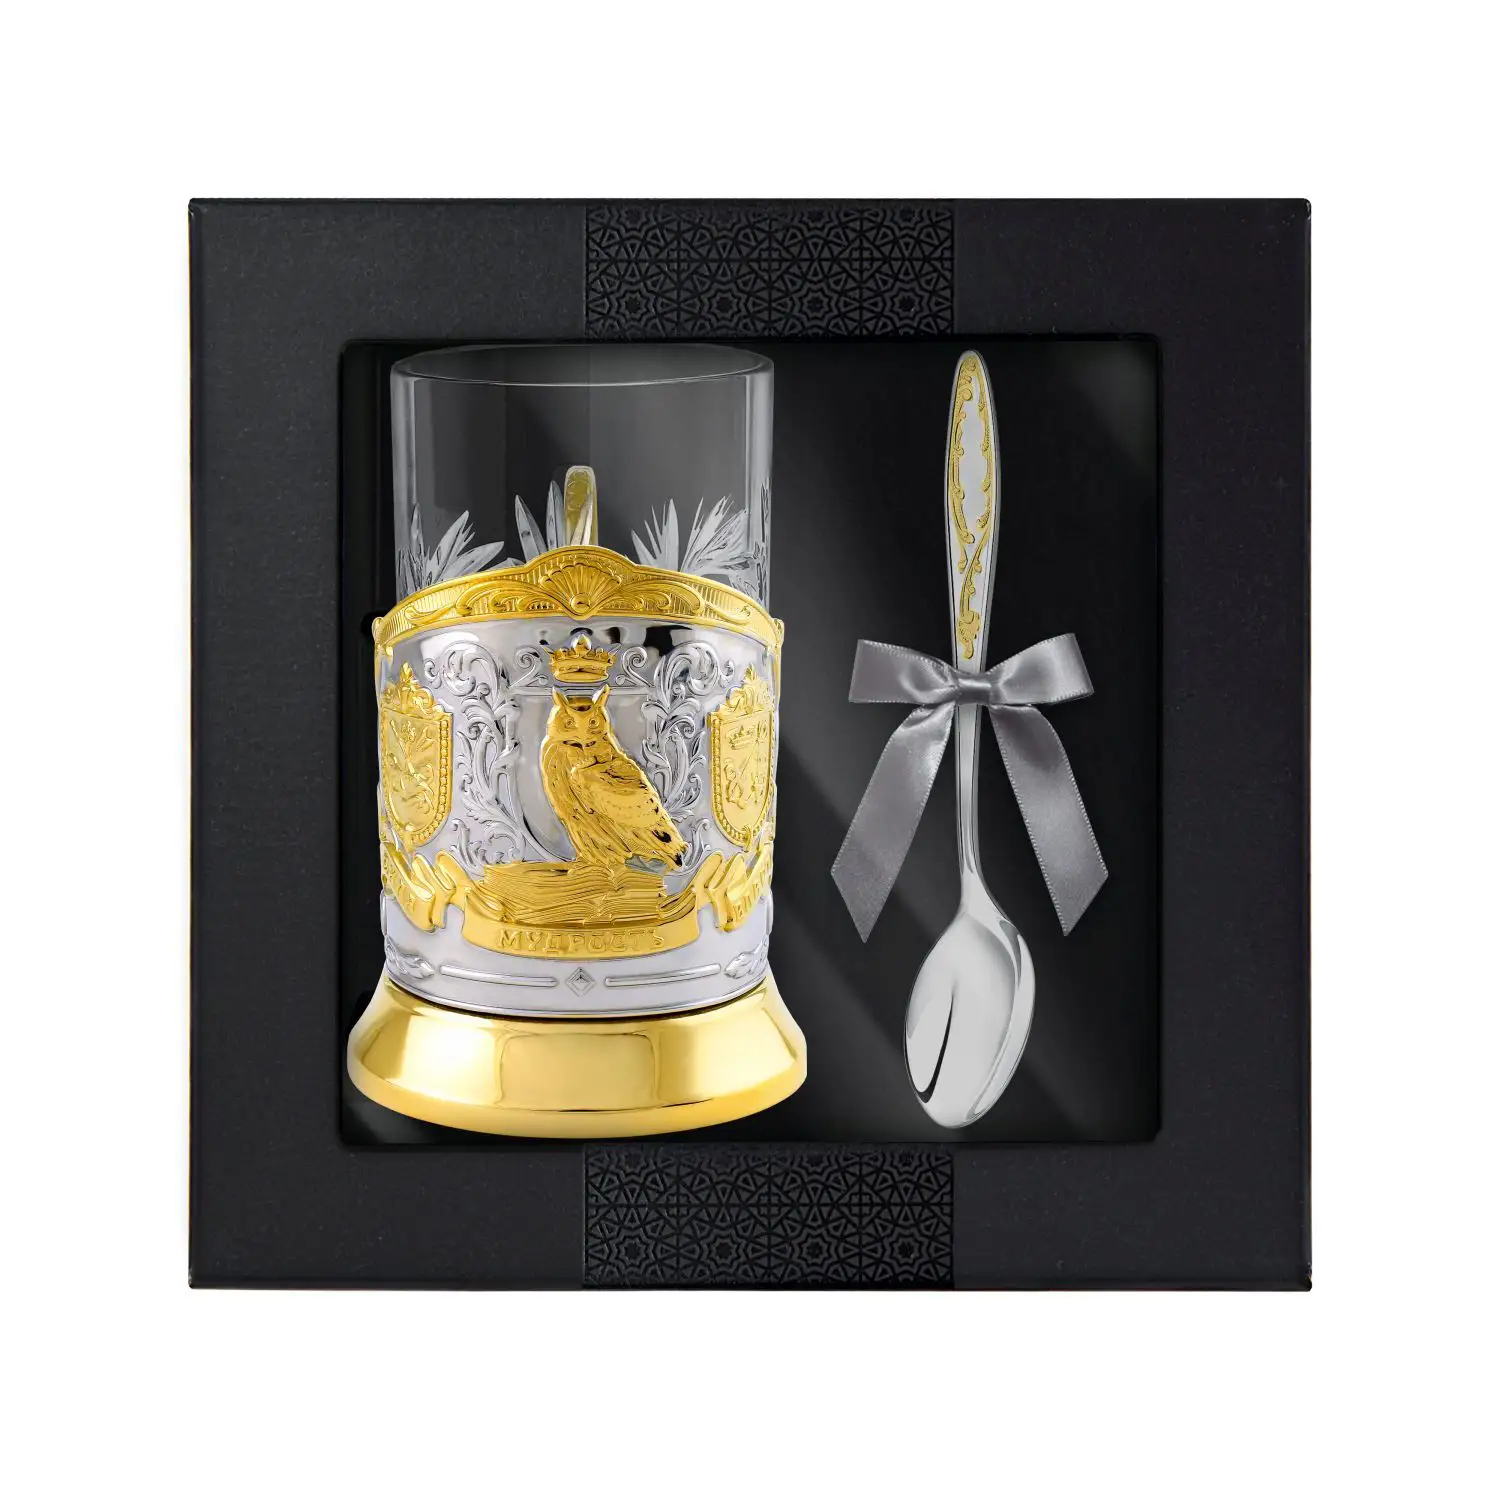 Набор для чая Мудрый руководитель: ложка, подстаканник, стакан никелированный с позолотой набор для чая мудрый руководитель триумфальная медный